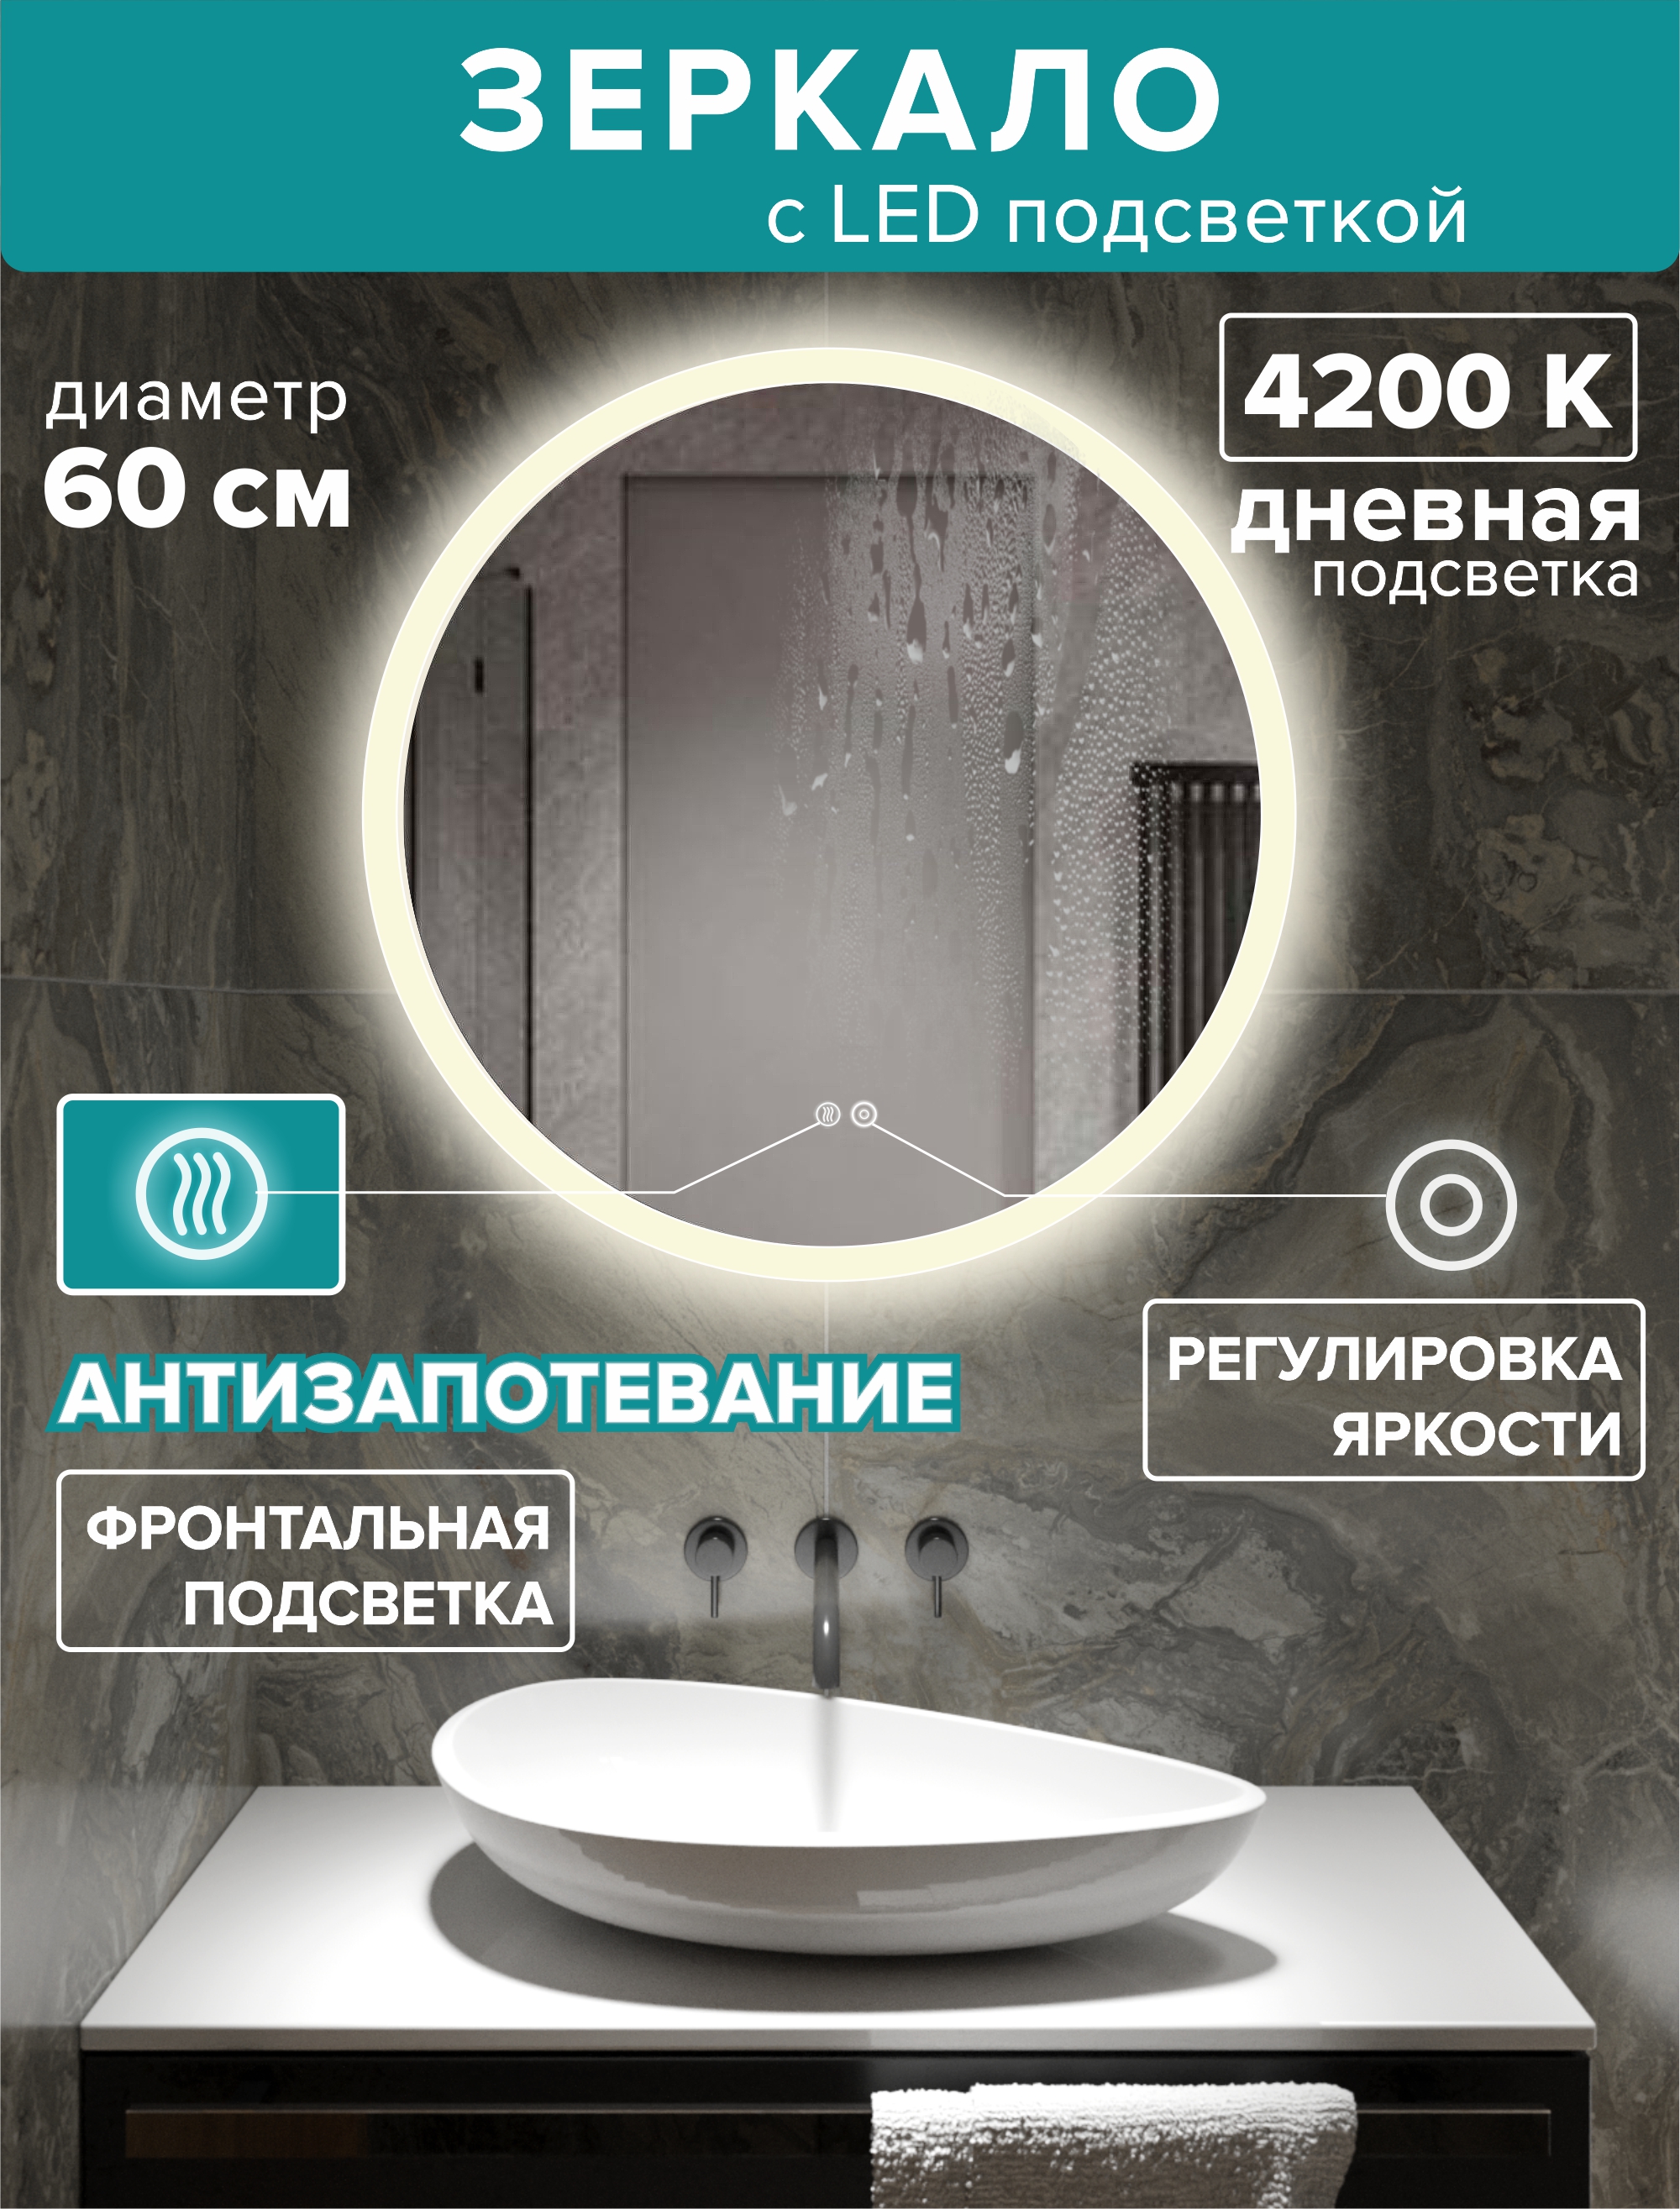 Зеркало для ванной Alfa Mirrors дневная подсветка 4200К, круглое 60 см, обогрев, MSvet-6Ad